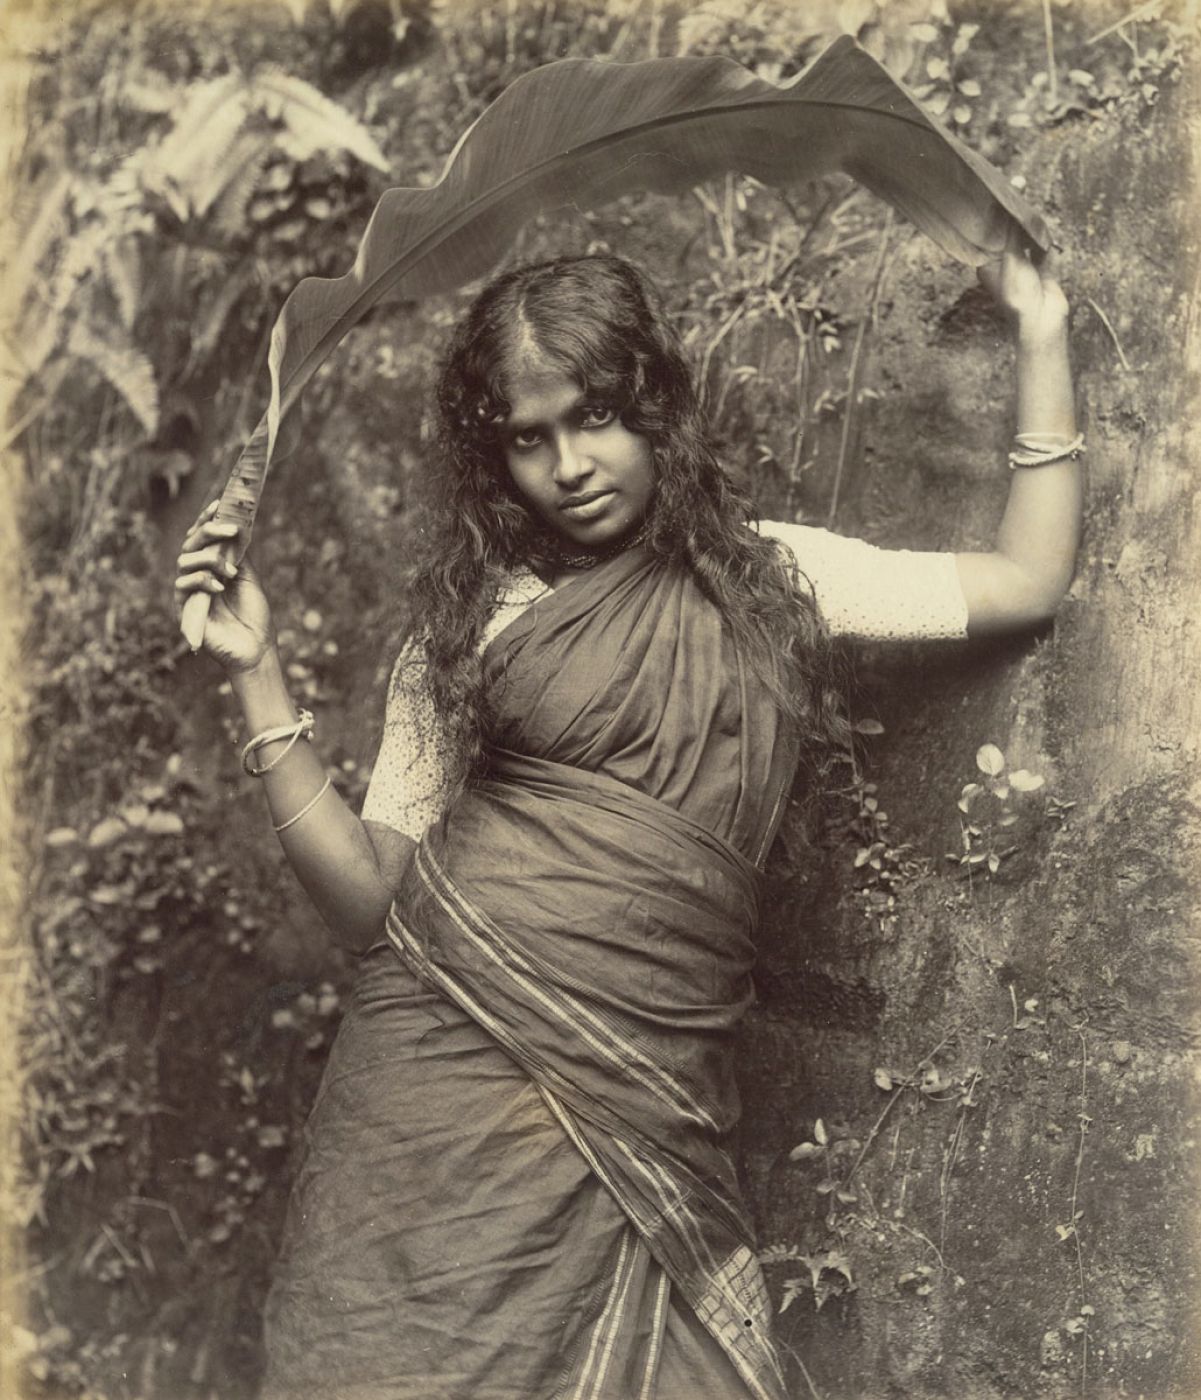 William Louis Henry Skeen & Co., “Tamil Girl”, 1880 ca.